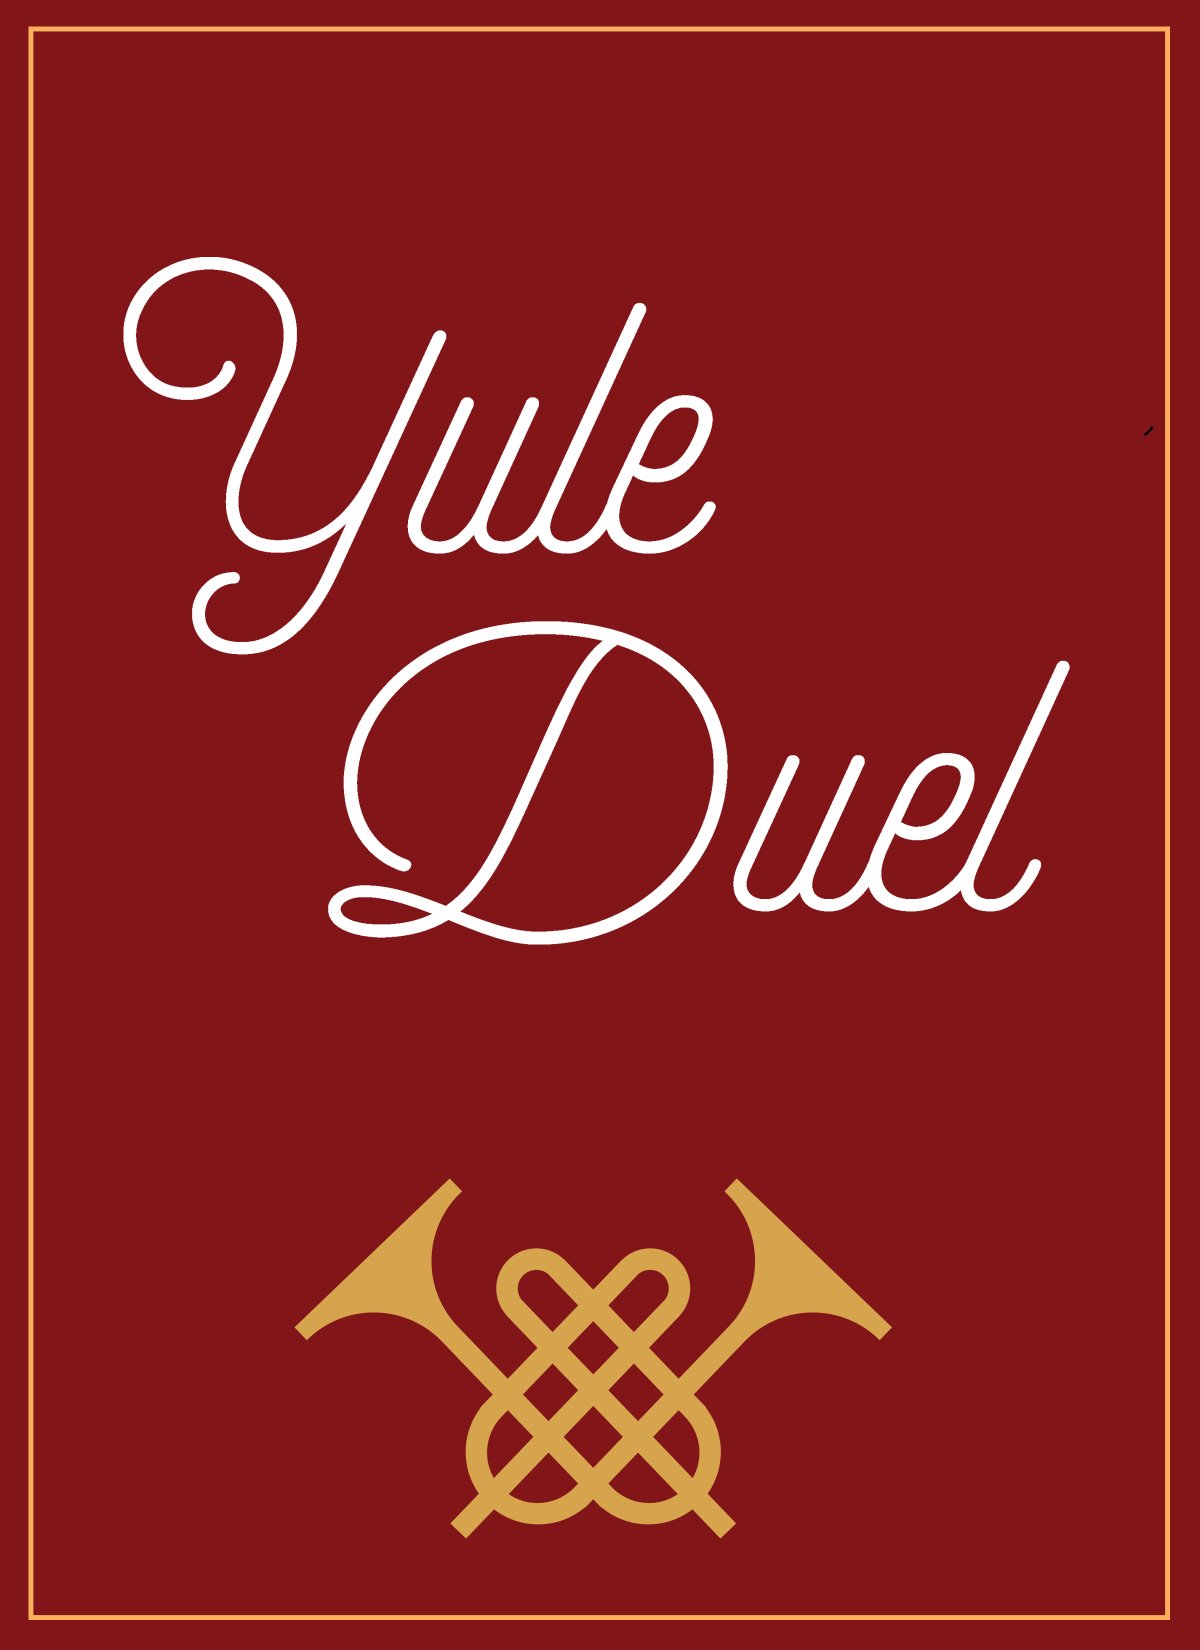 Yule Duel 2017 - image